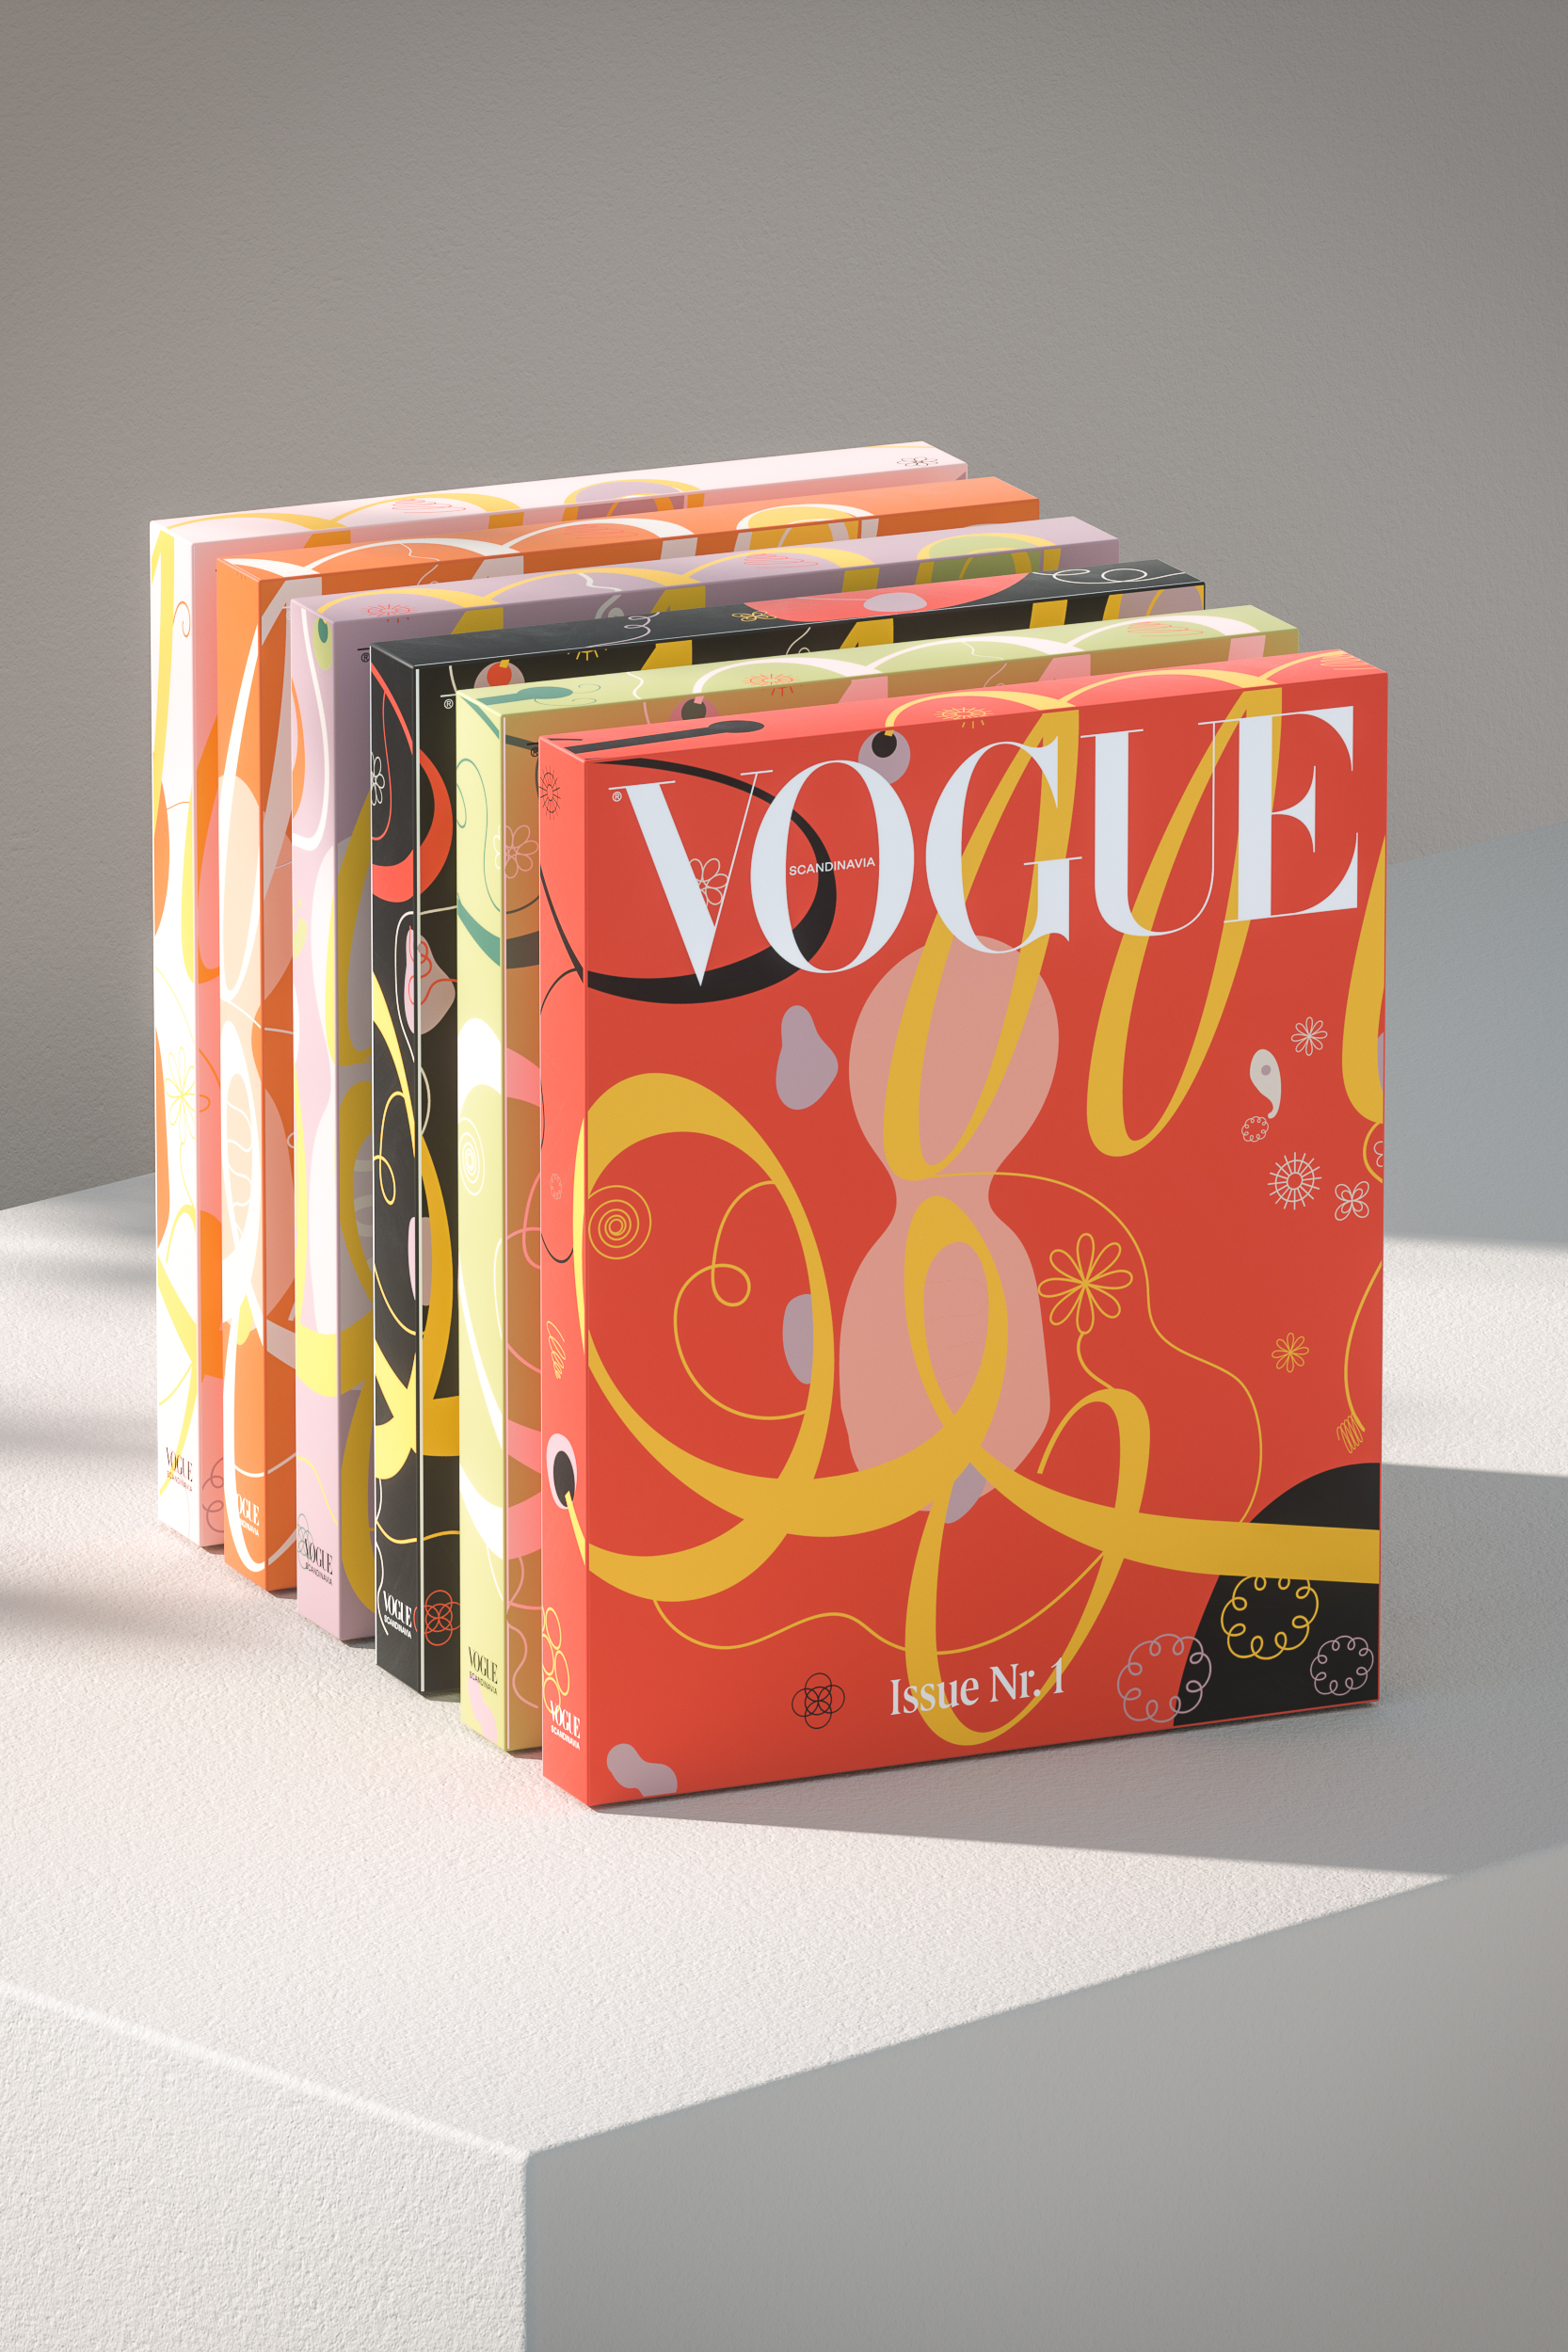 Как создать самый экологичный журнал в мире — рассказывает главный редактор скандинавского Vogue